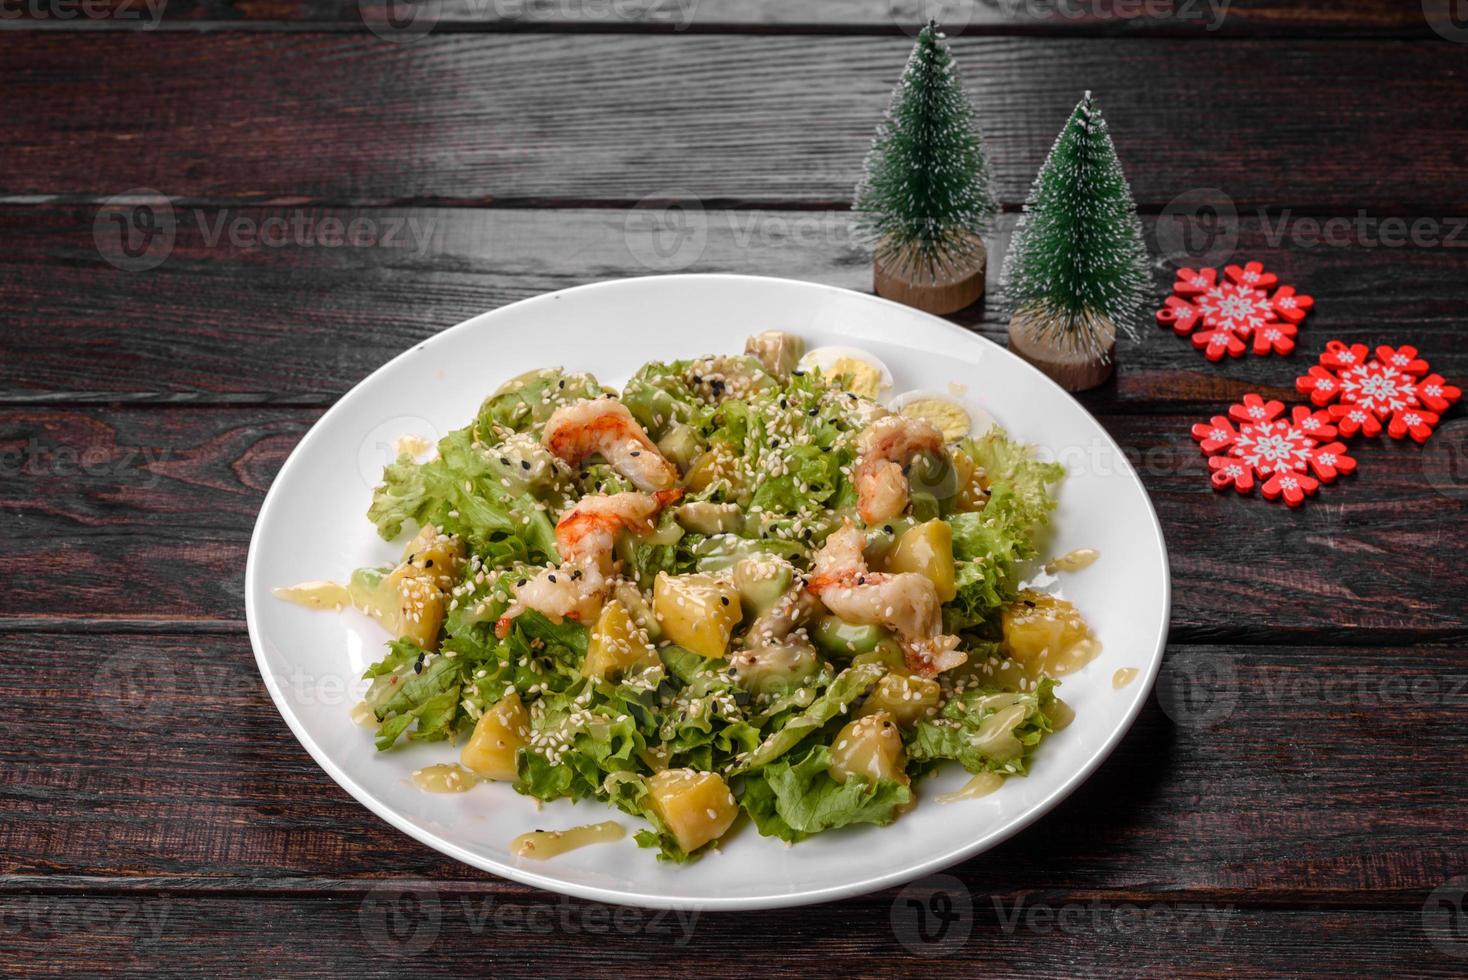 sabrosa ensalada fresca preparada para la mesa navideña foto